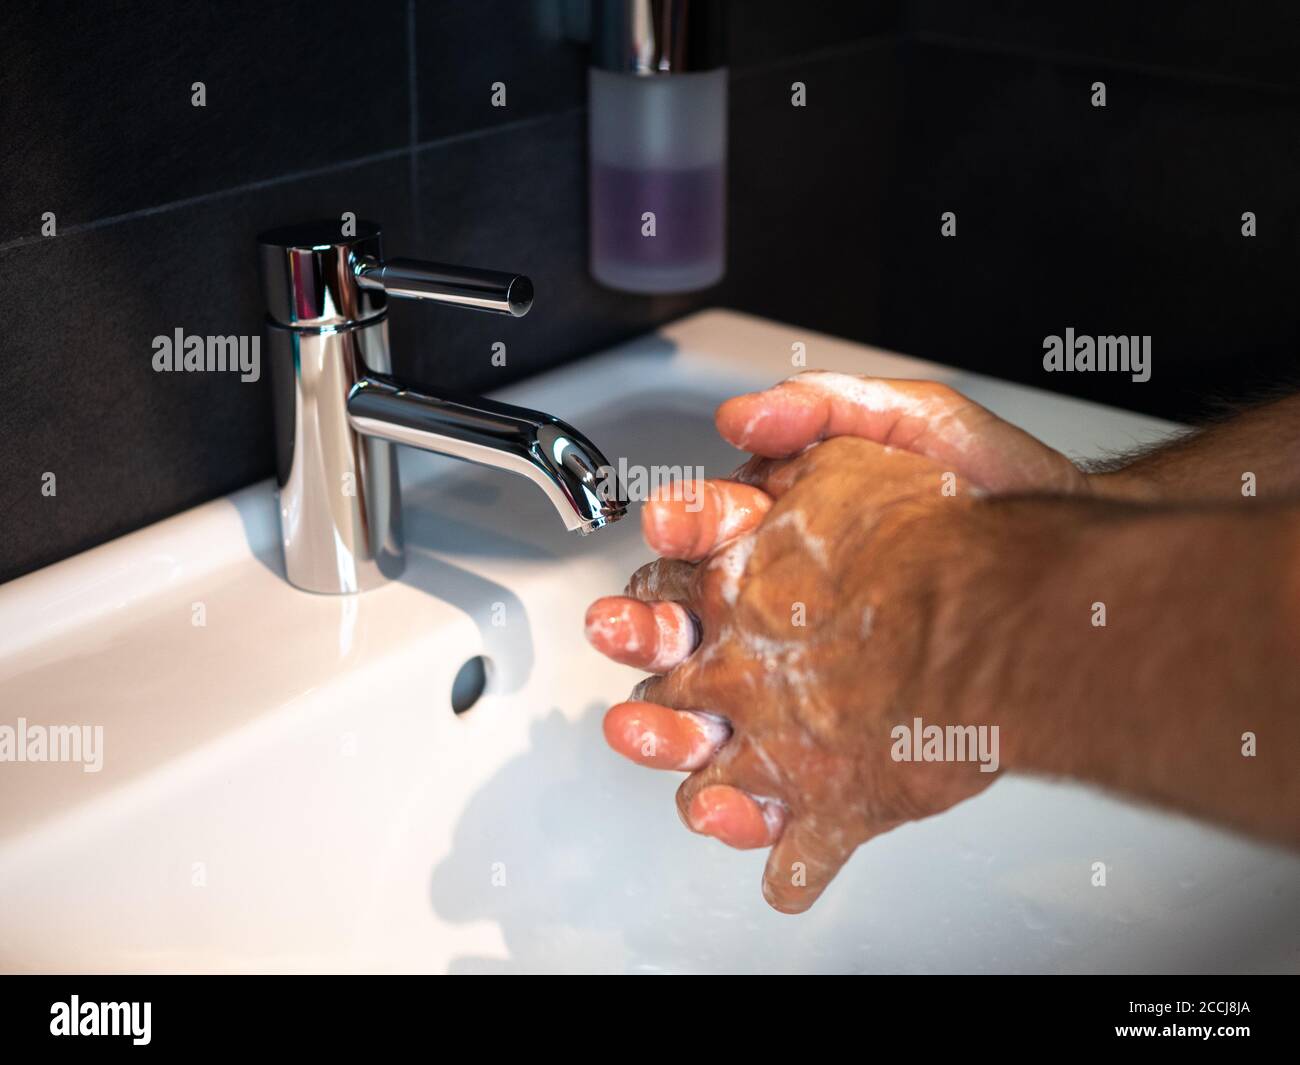 Lavarse las manos higiene personal hombre lavarse las manos frotar el jabón durante 20 segundos siguiendo los pasos, limpiar las muñecas y enjuagarse bajo el agua en el baño de la casa. Foto de stock